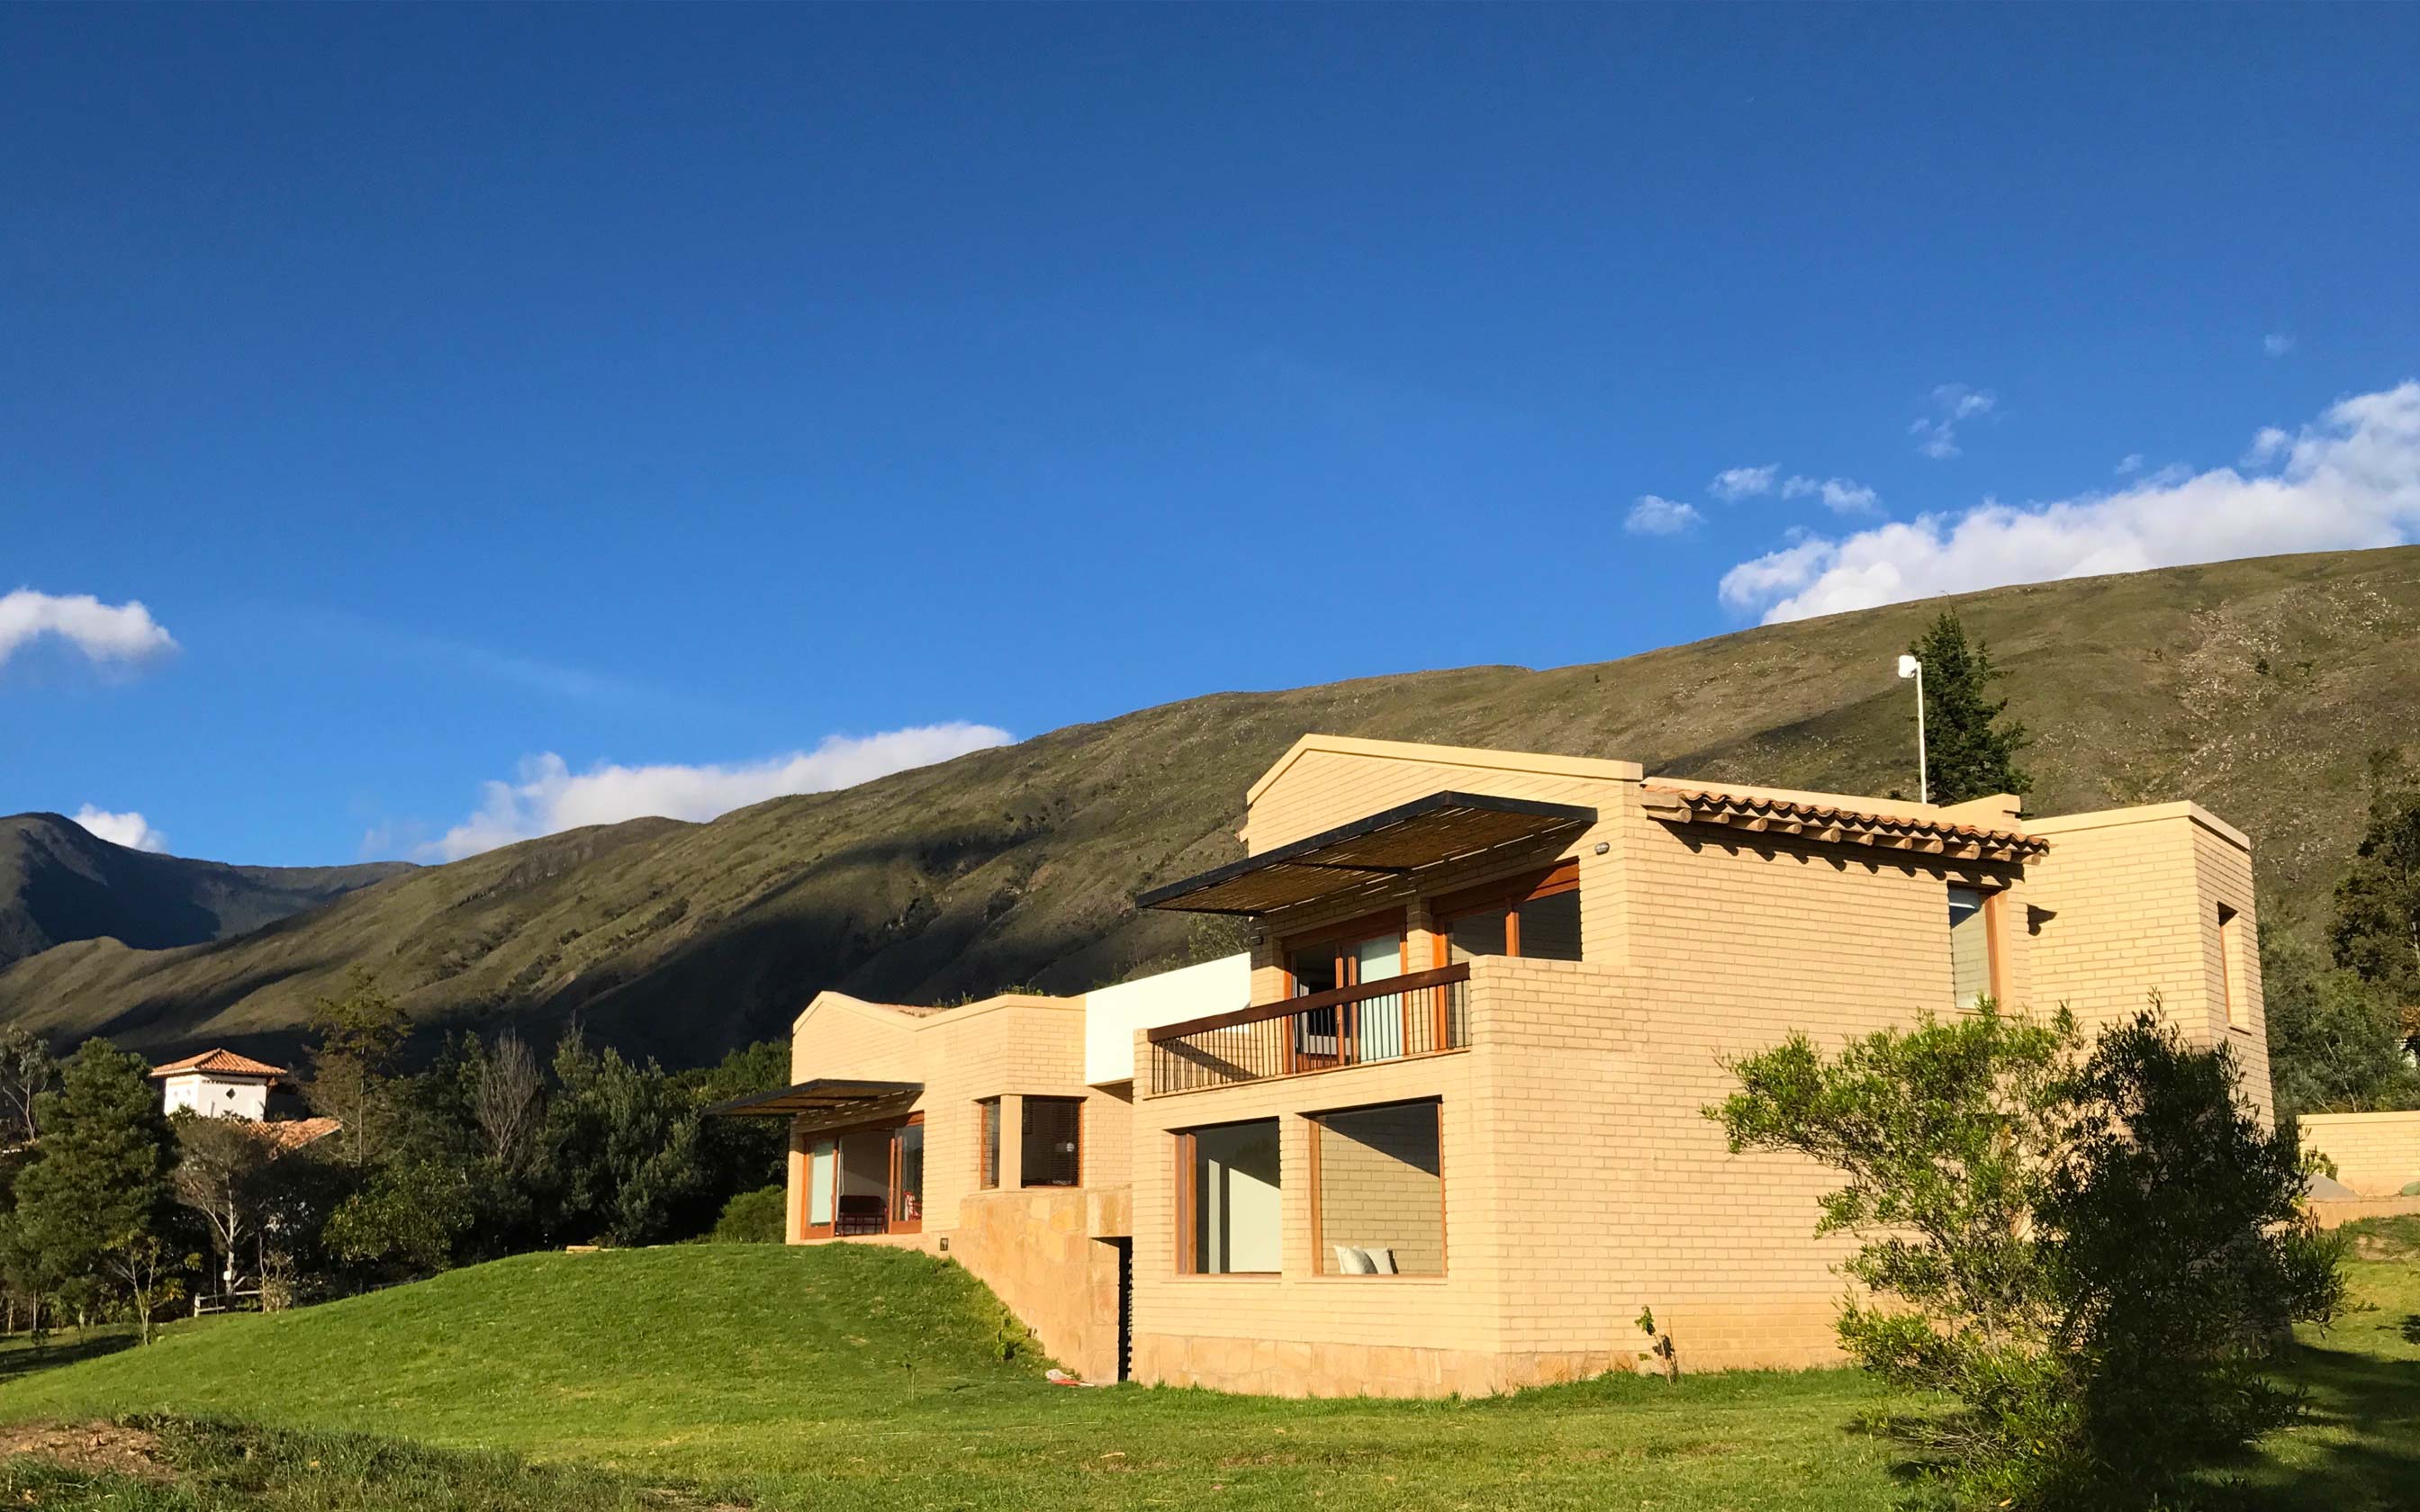 Arquitecto Villa de Leyva - Casa Cerros de Iguaque